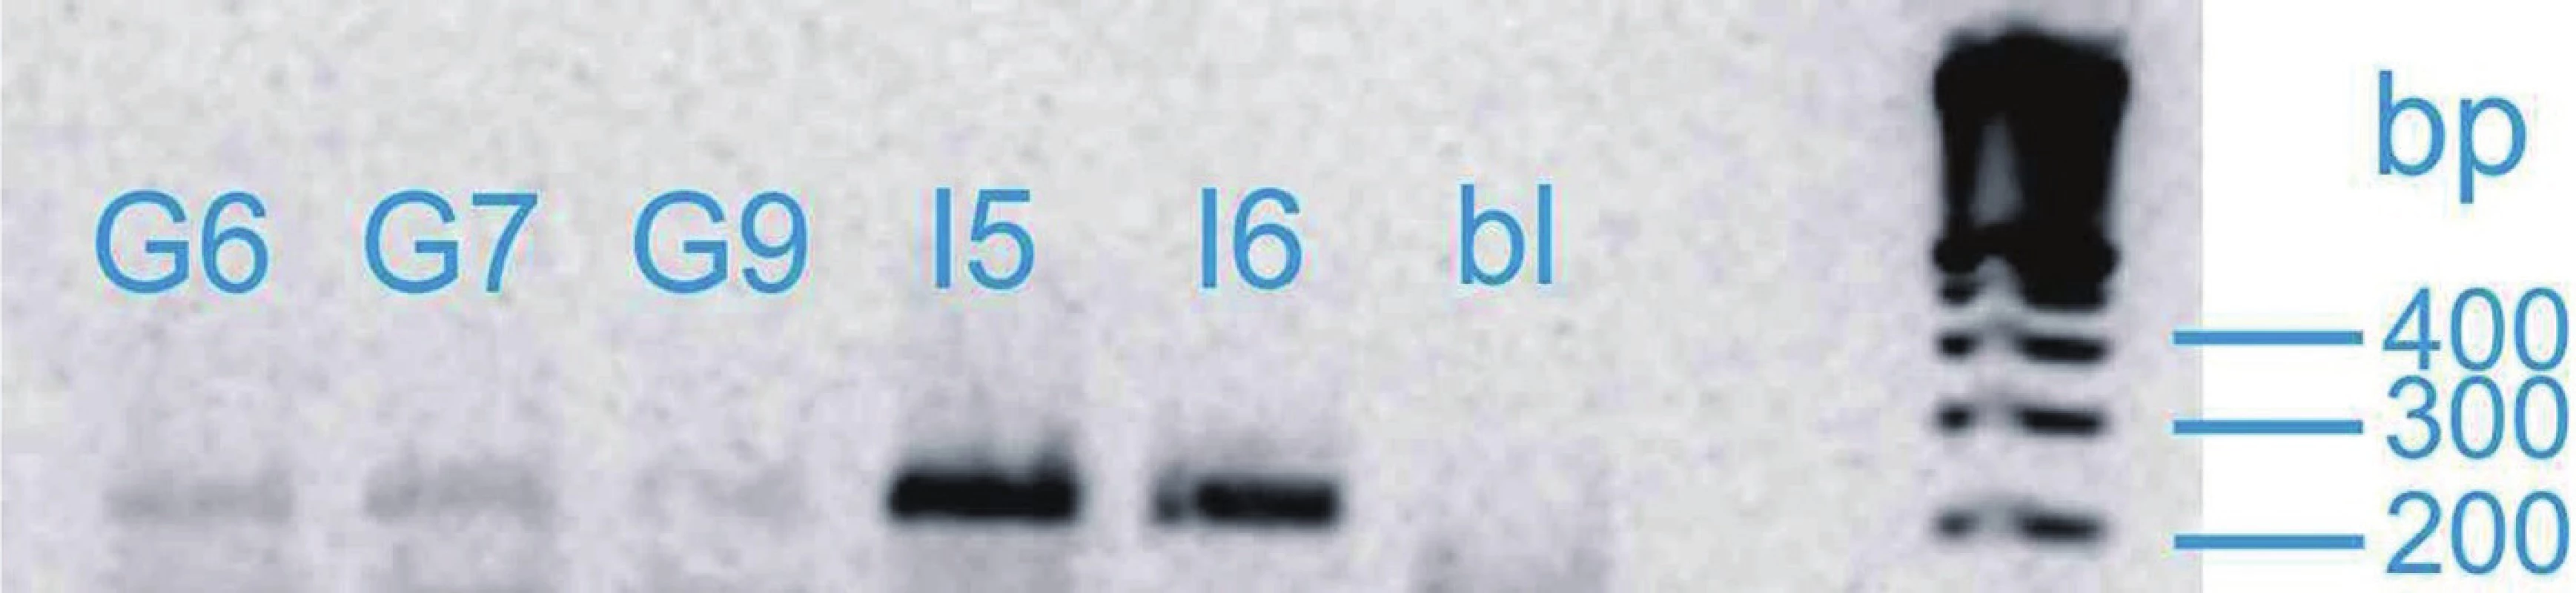 Vizualizace genu SHB
Fig. 1. Visualization of SHB gene